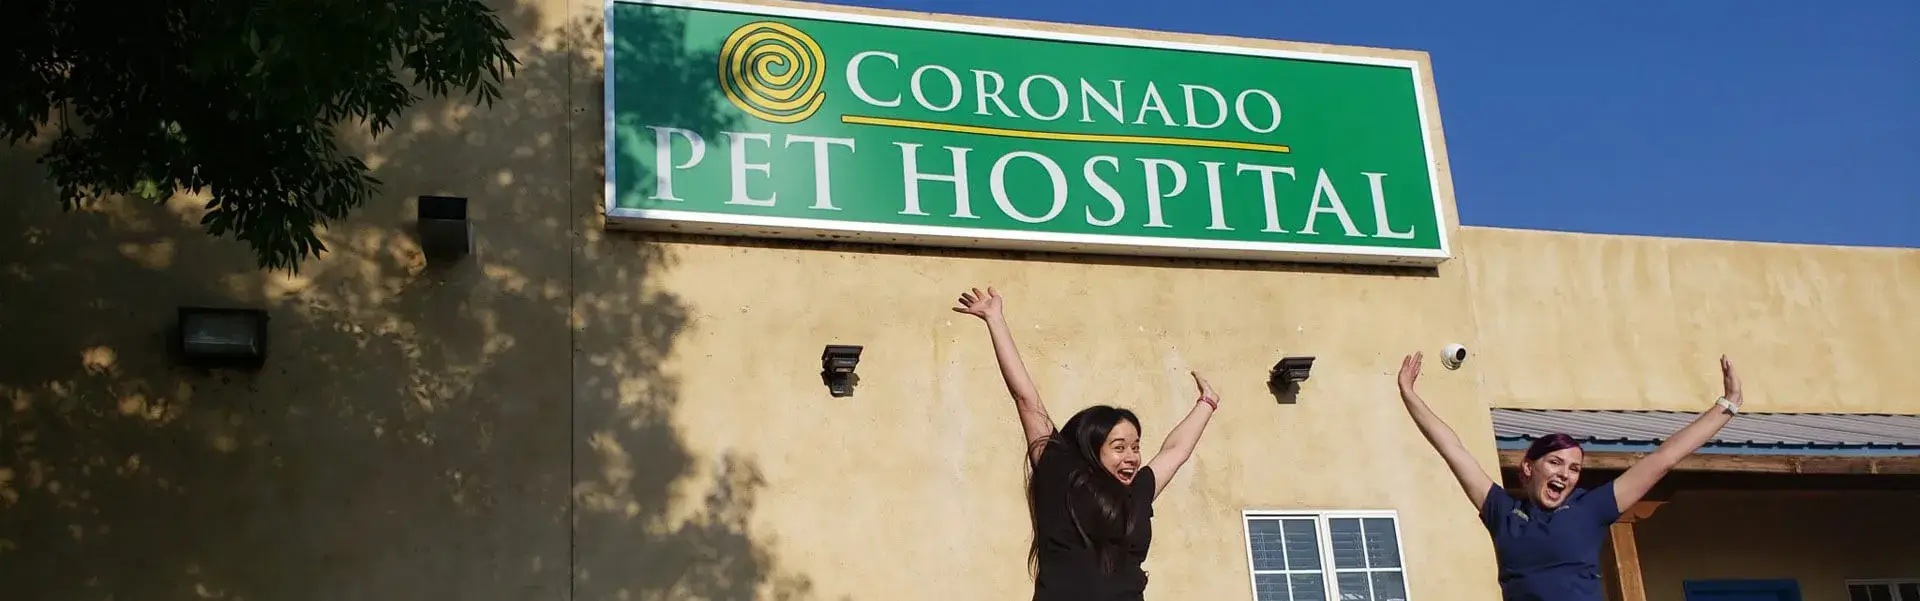 Coronado Pet Hospital - Banner